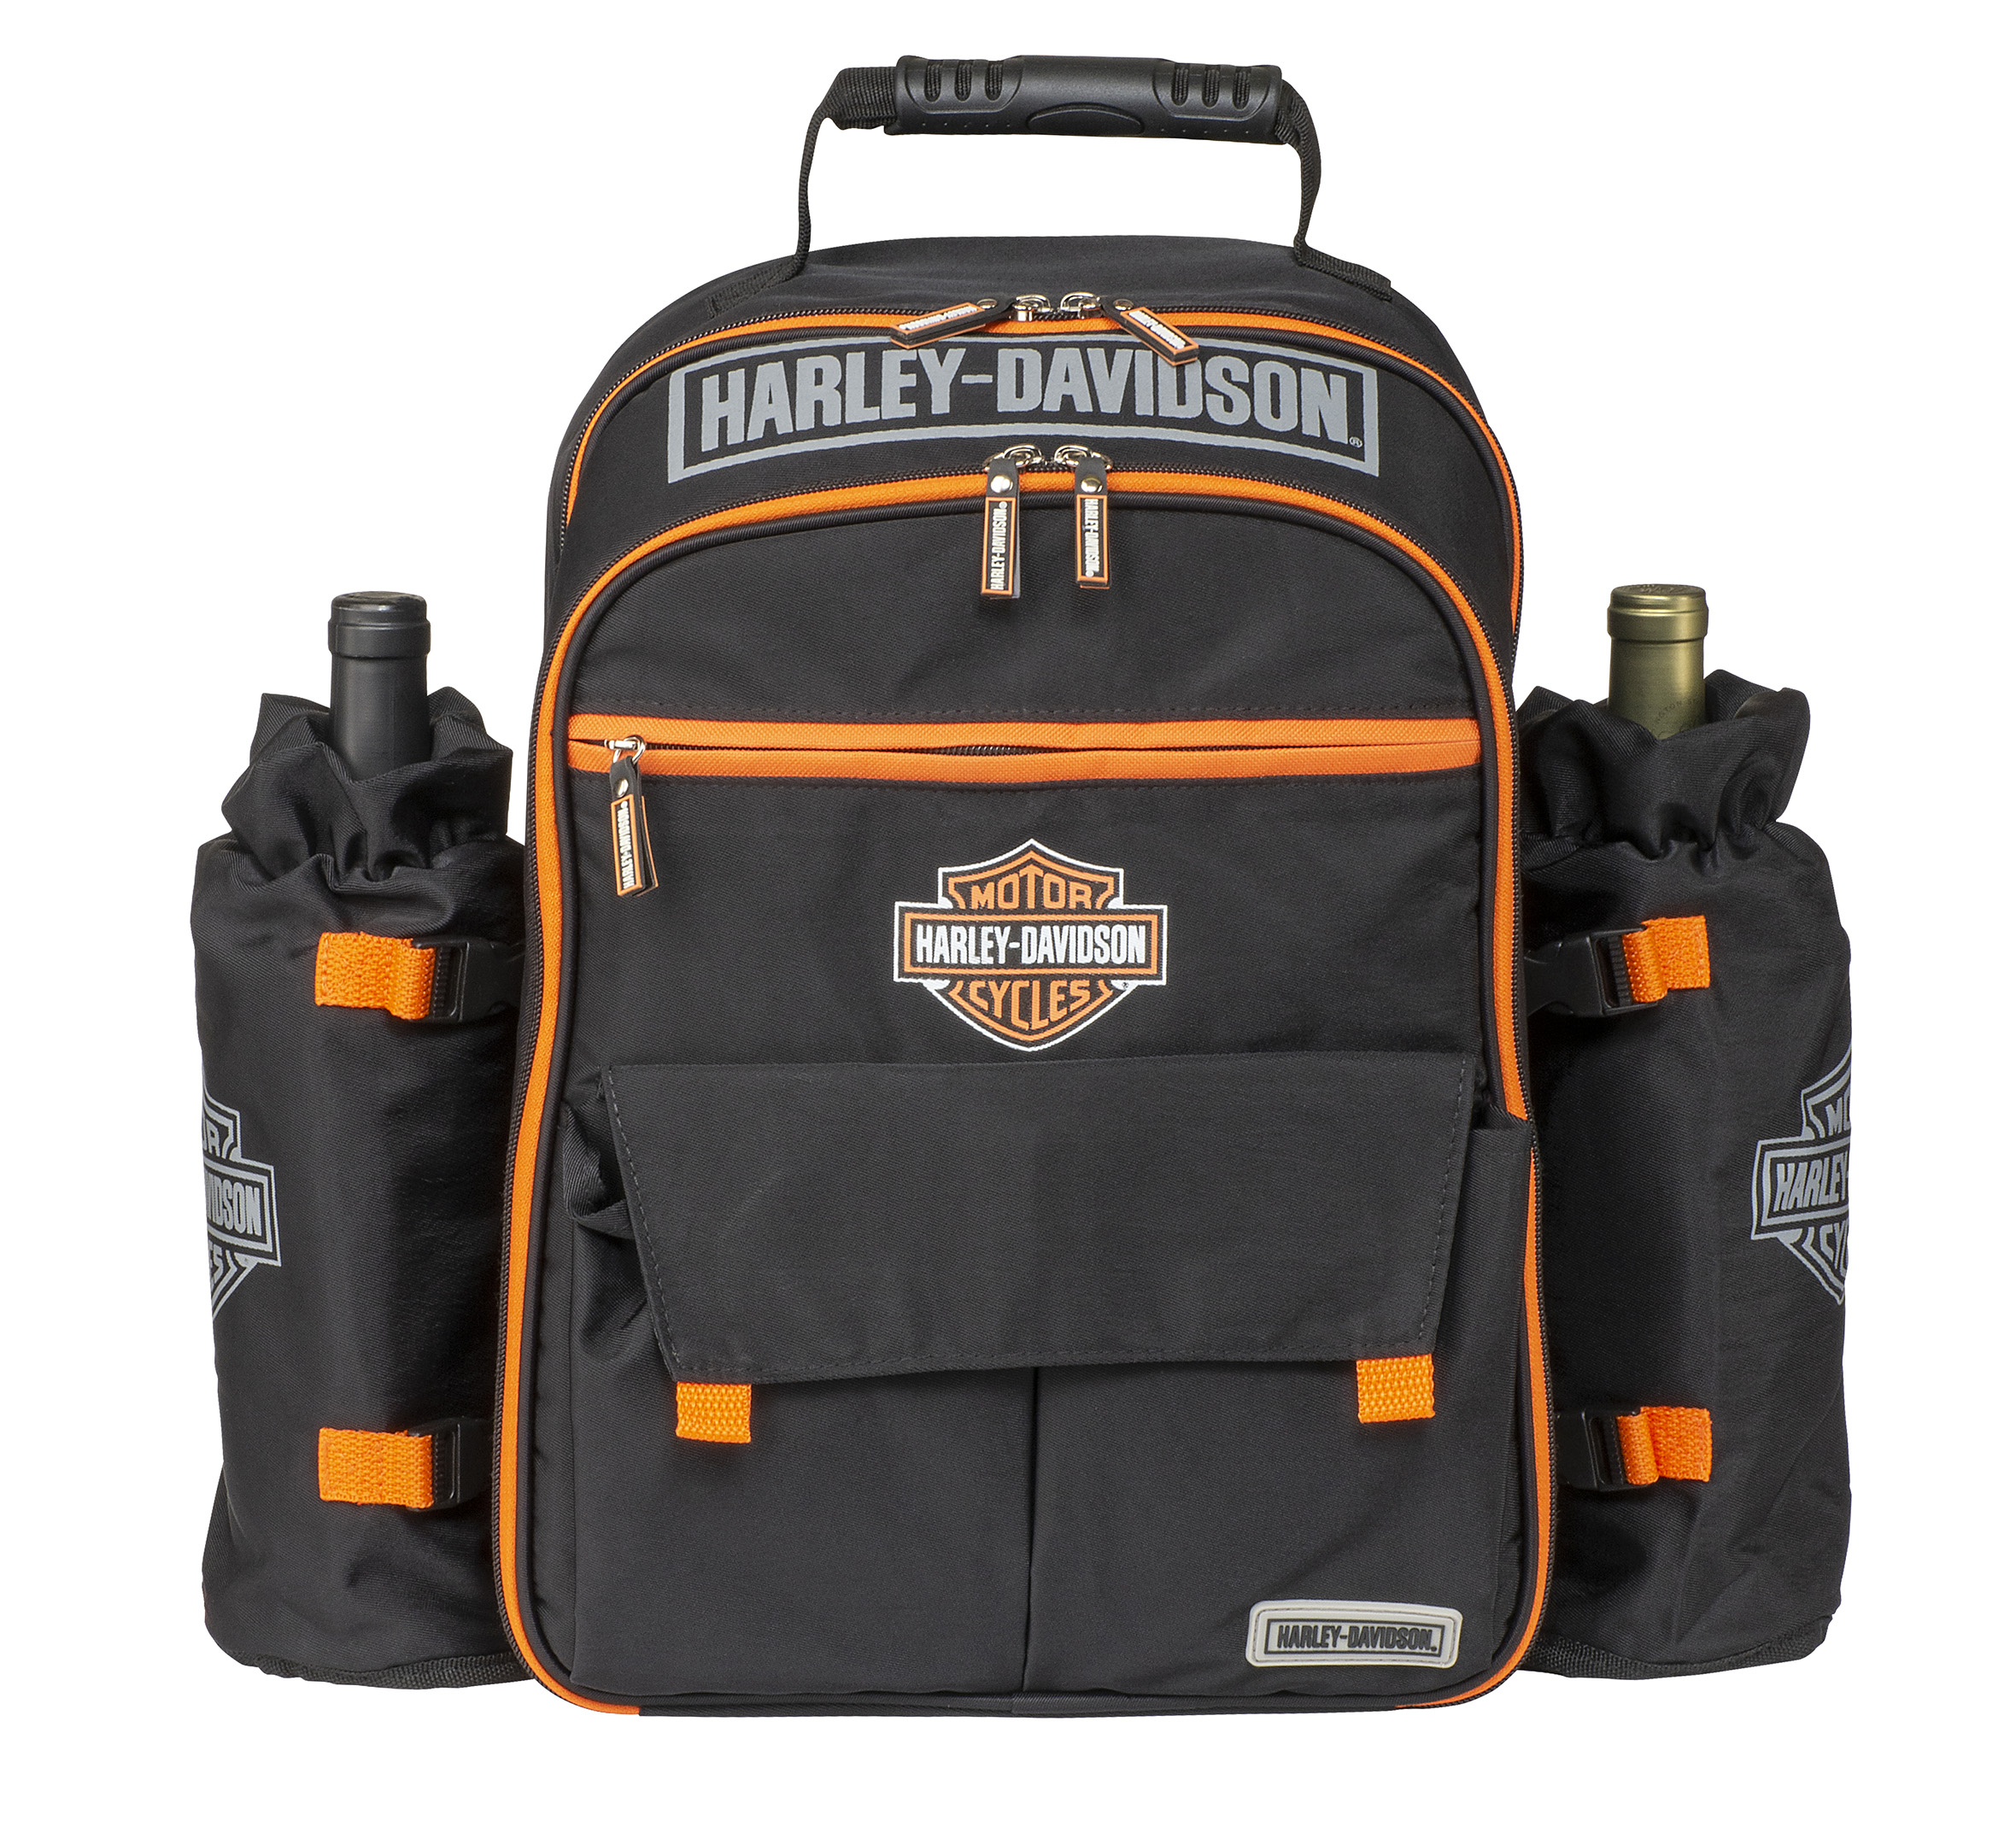 Harley Davidson BackPack purse www.ugel01ep.gob.pe